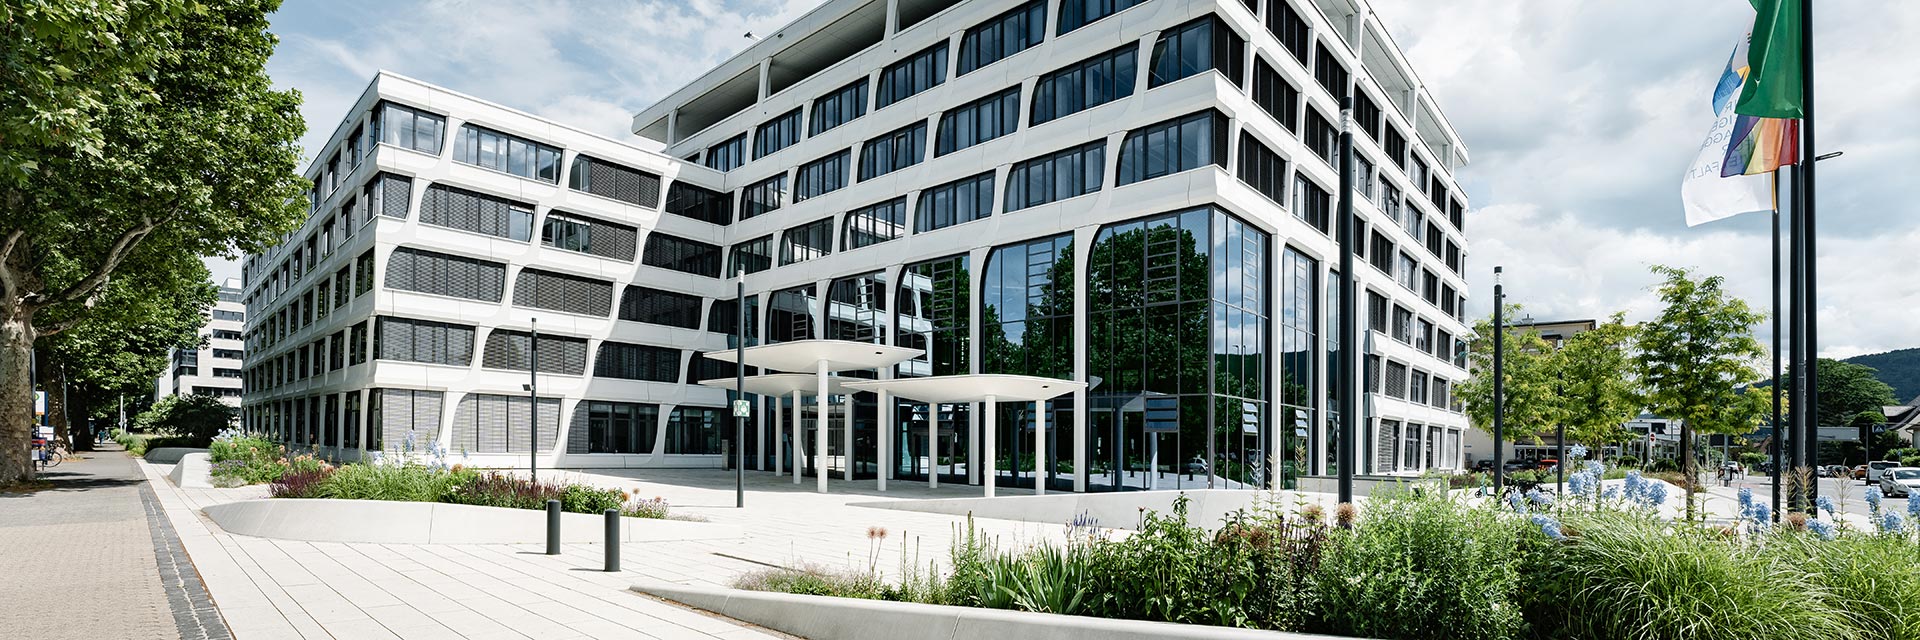 Hauptverwaltung von Heidelberg Materials: weißes Gebäude mit vielen Fenstern